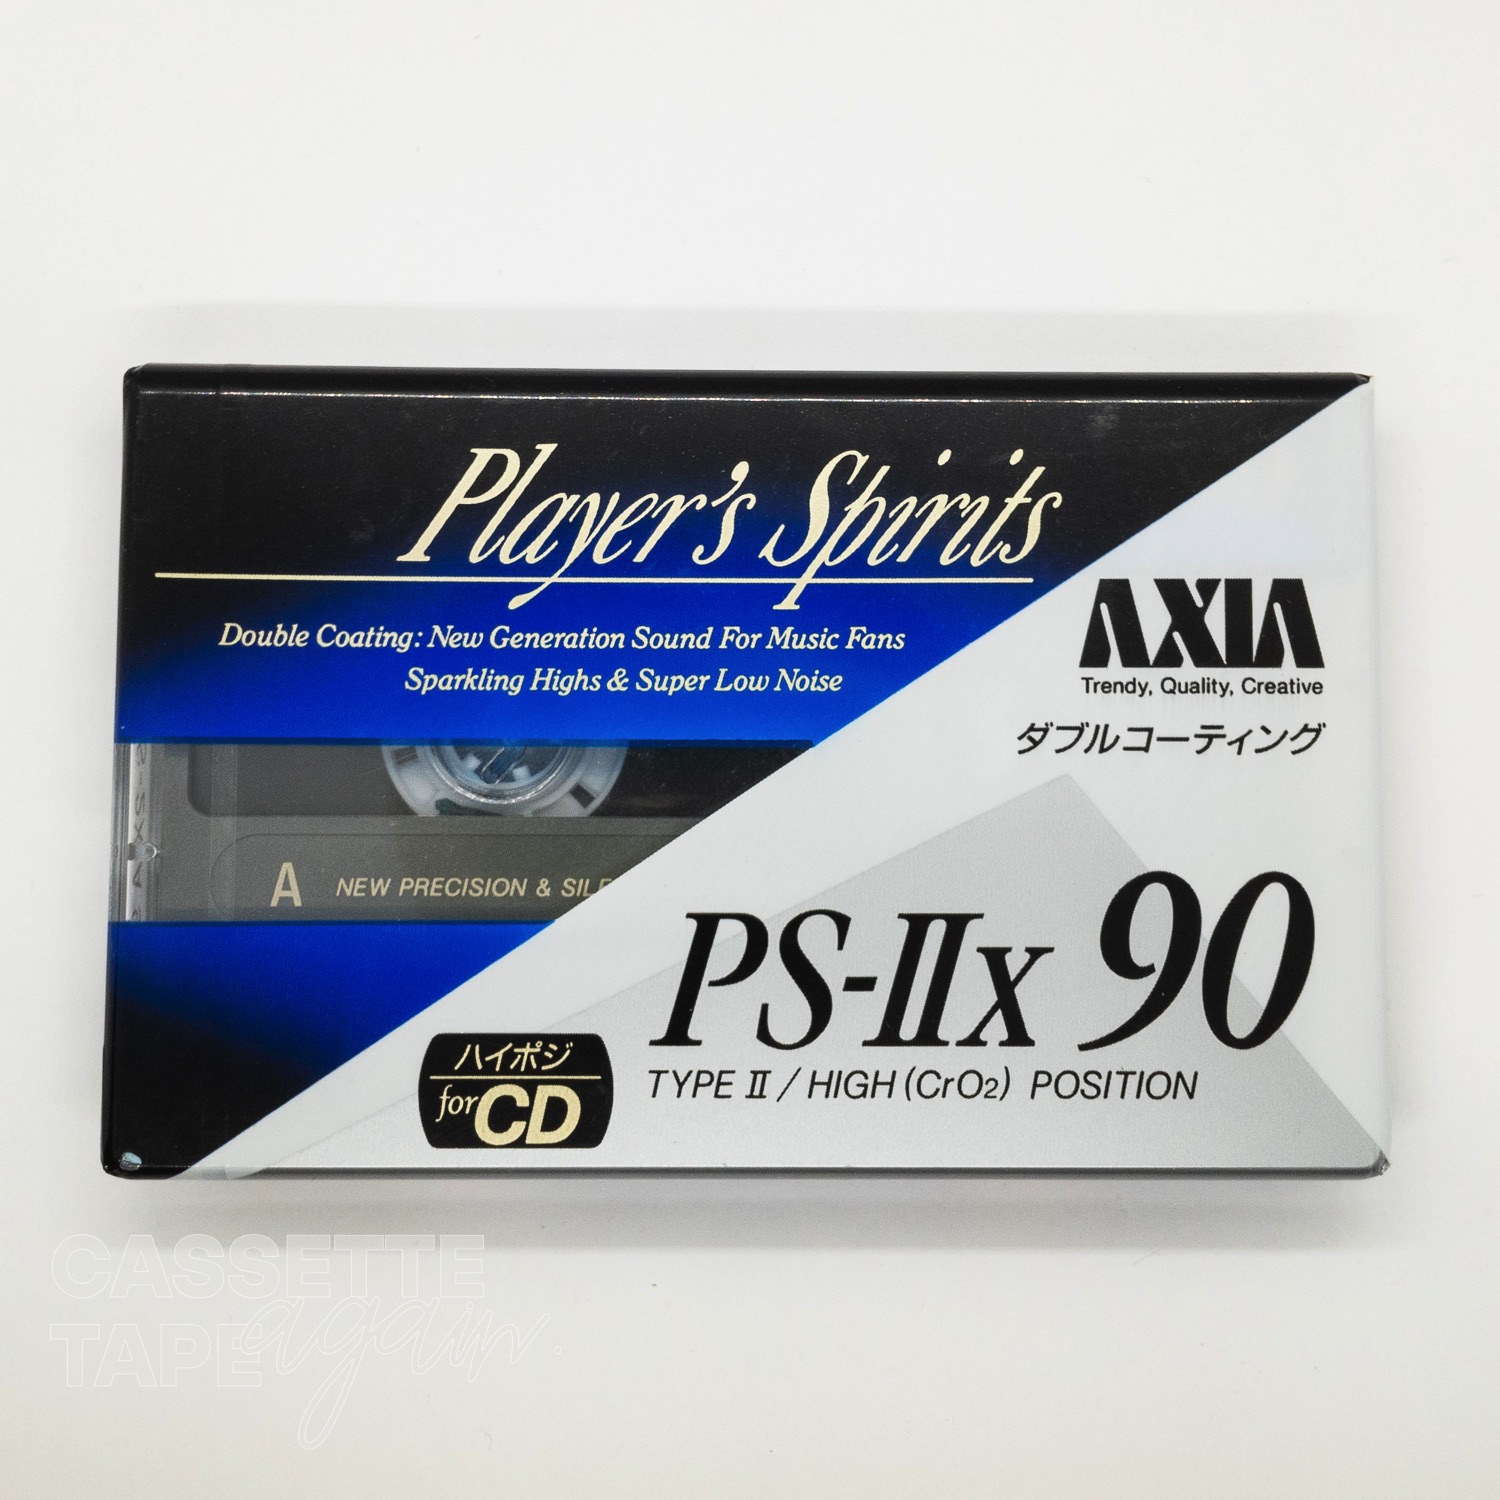 PS 2x 90 / AXIA/FUJI(ハイポジ)